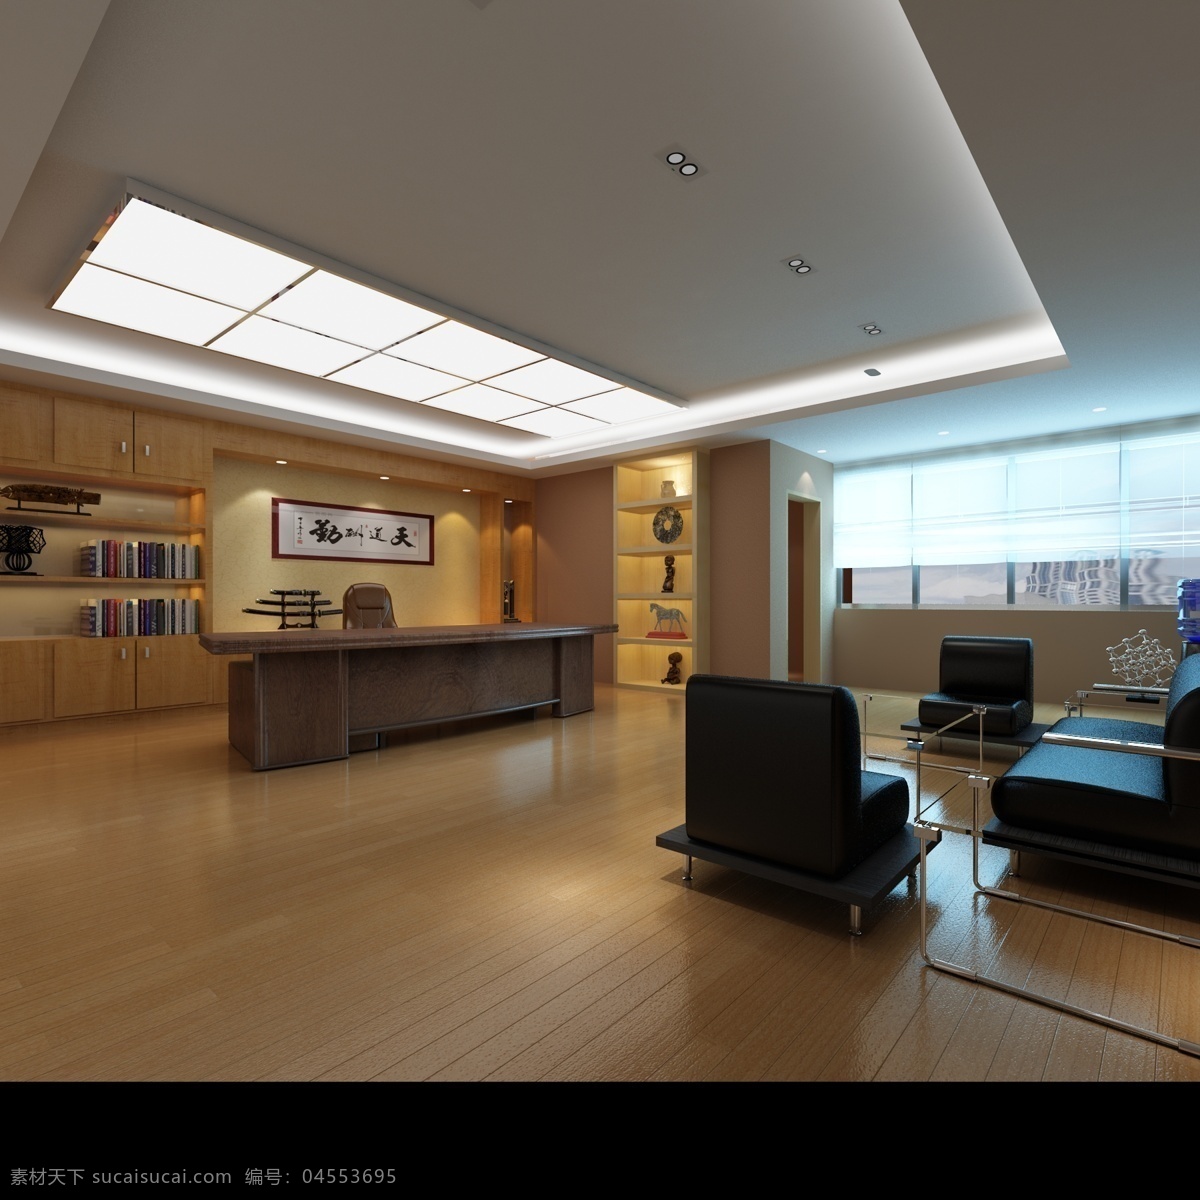 3dmax 建筑园林 室内设计 室内摄影 效果图 总经理 办公室 总经理办公室 vary 装饰素材